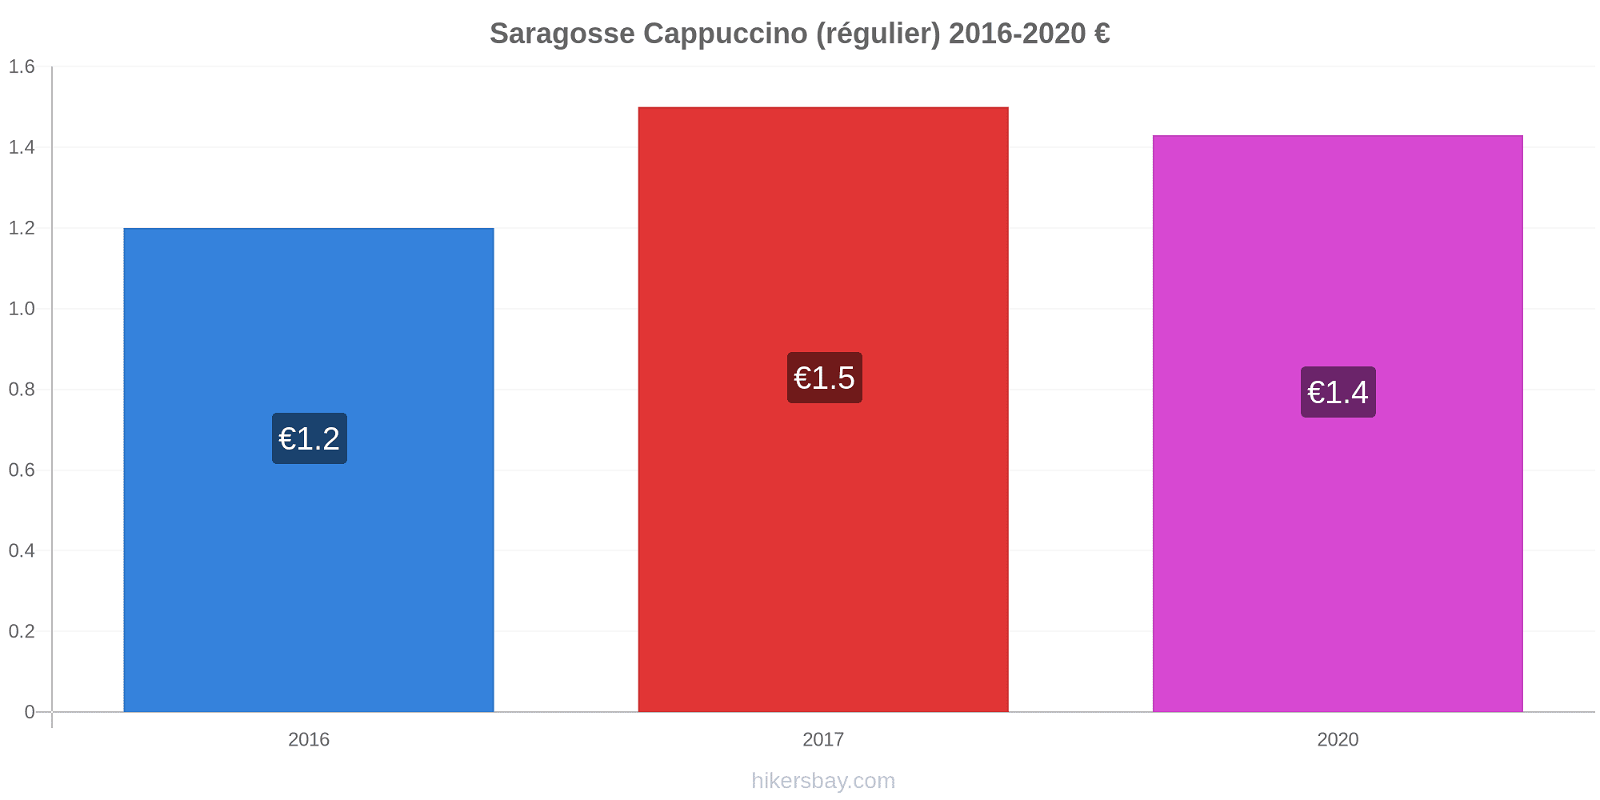 Saragosse changements de prix Cappuccino (régulier) hikersbay.com